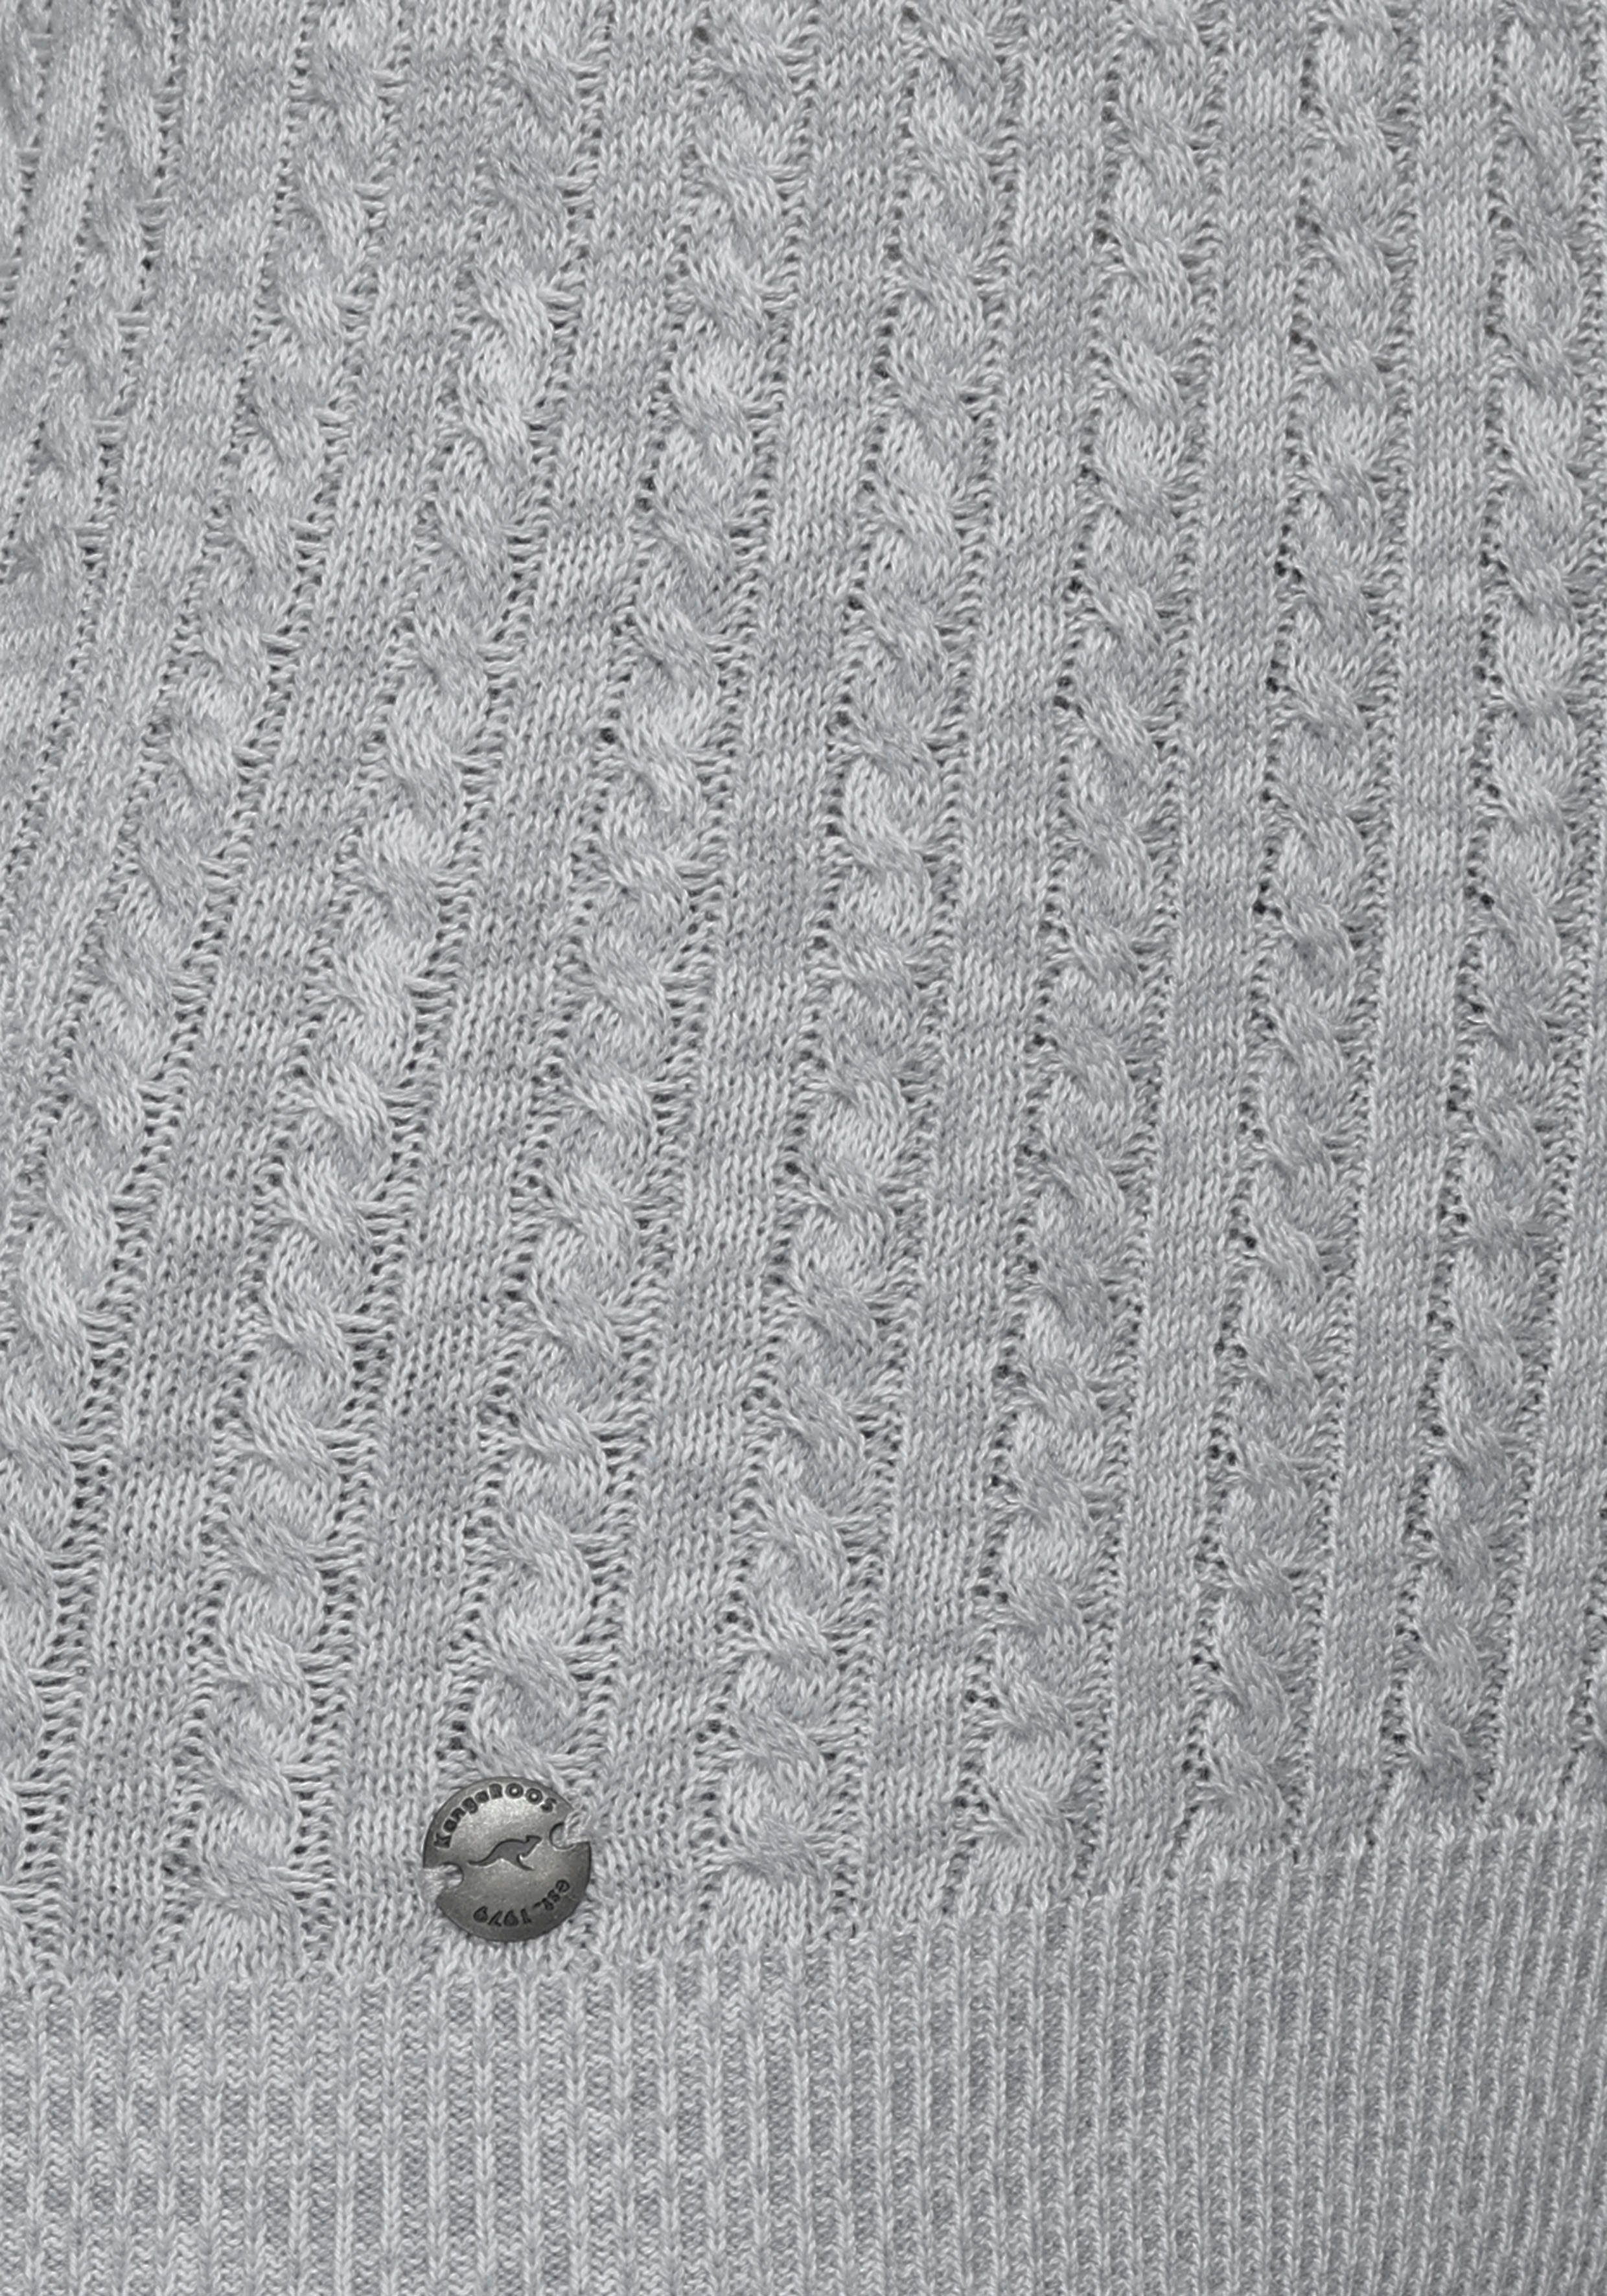 Zopf-Strick-Design KangaROOS feinen im Kapuzenpullover grau-wollweiß-melange